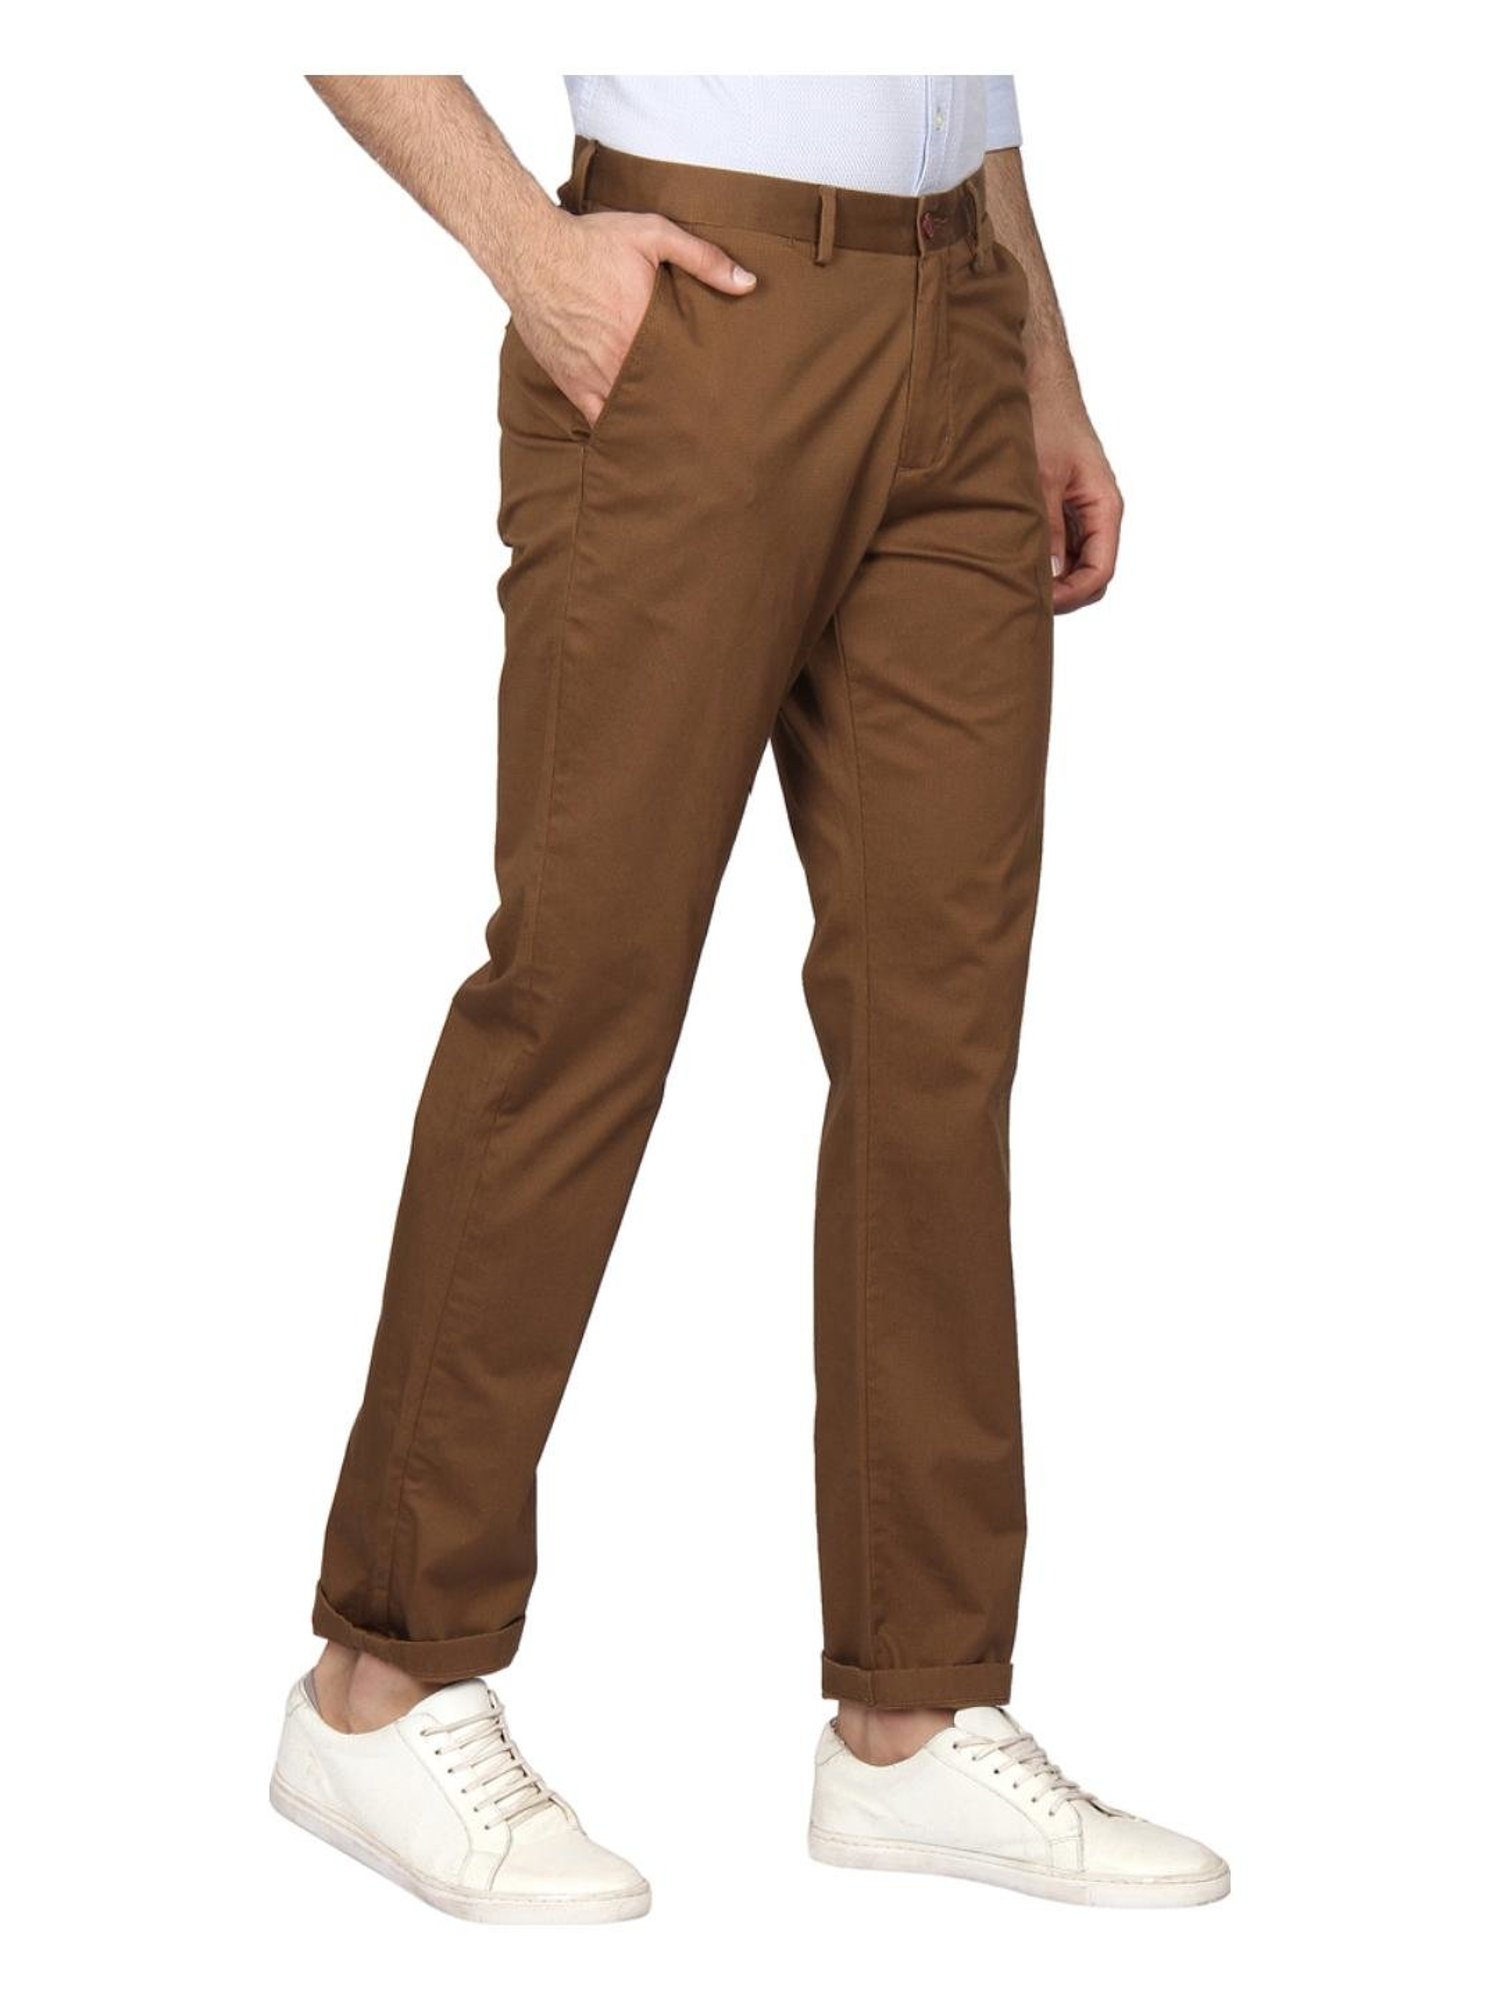 Buy MUSTARD KHAKI Trousers & Pants for Men by BLACKBERRYS Online | Ajio.com